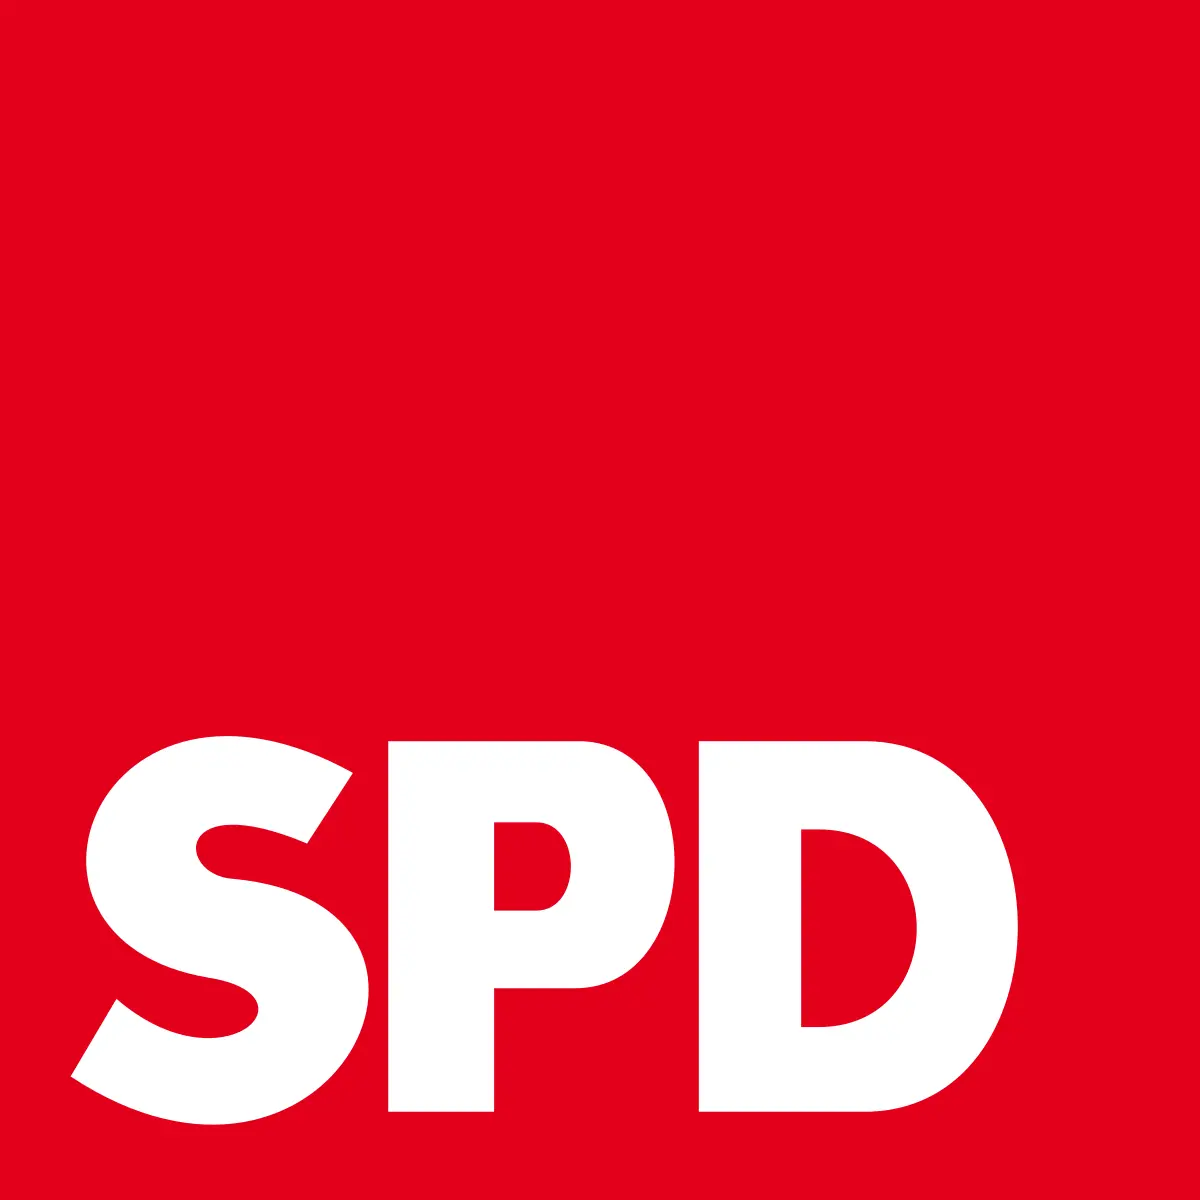 Združena lista – Socialni demokrati - EU Political Barometer